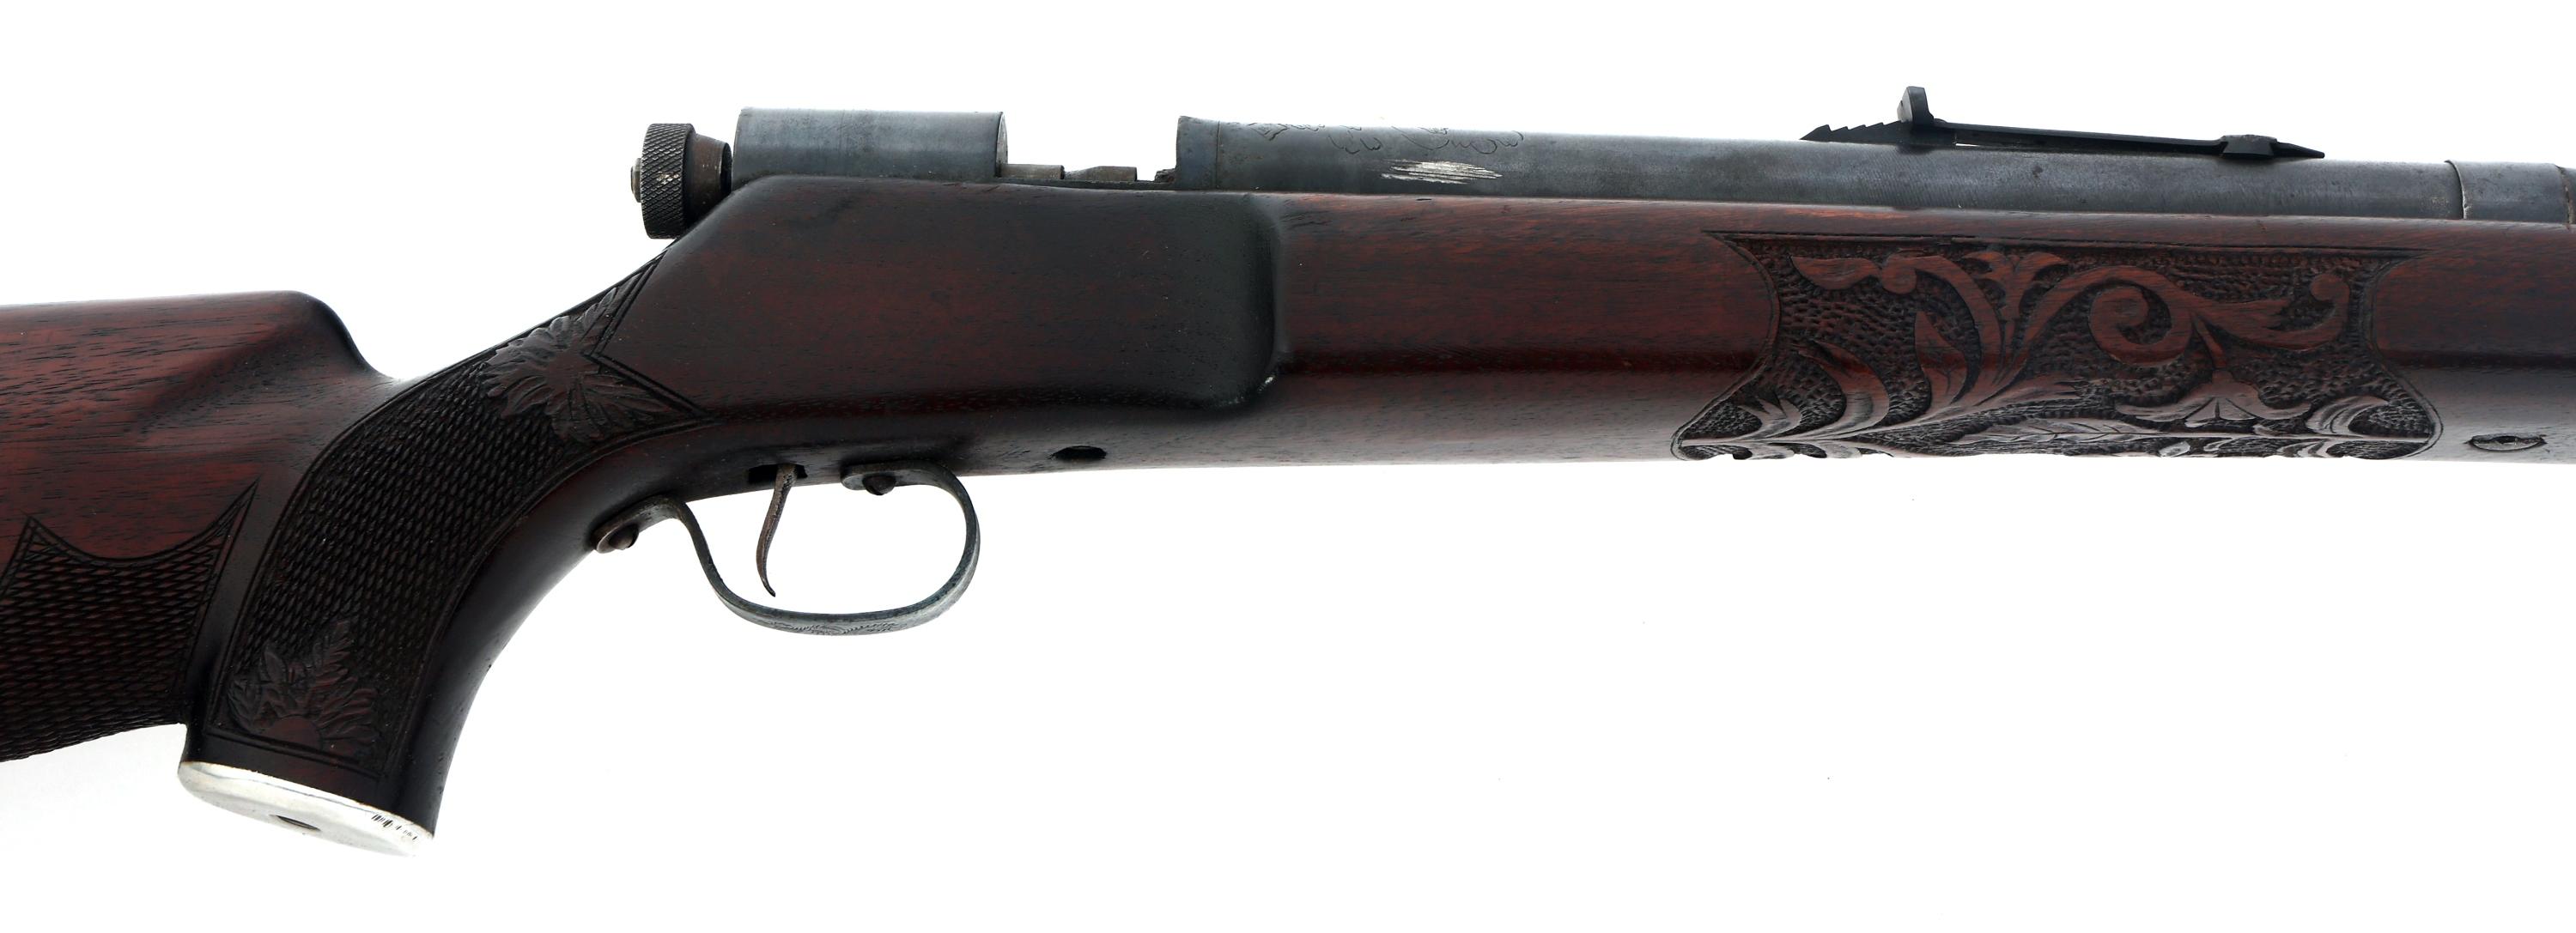 HOOSIER GUN SHOP MODEL 500 38 CALIBER TARGET RIFLE